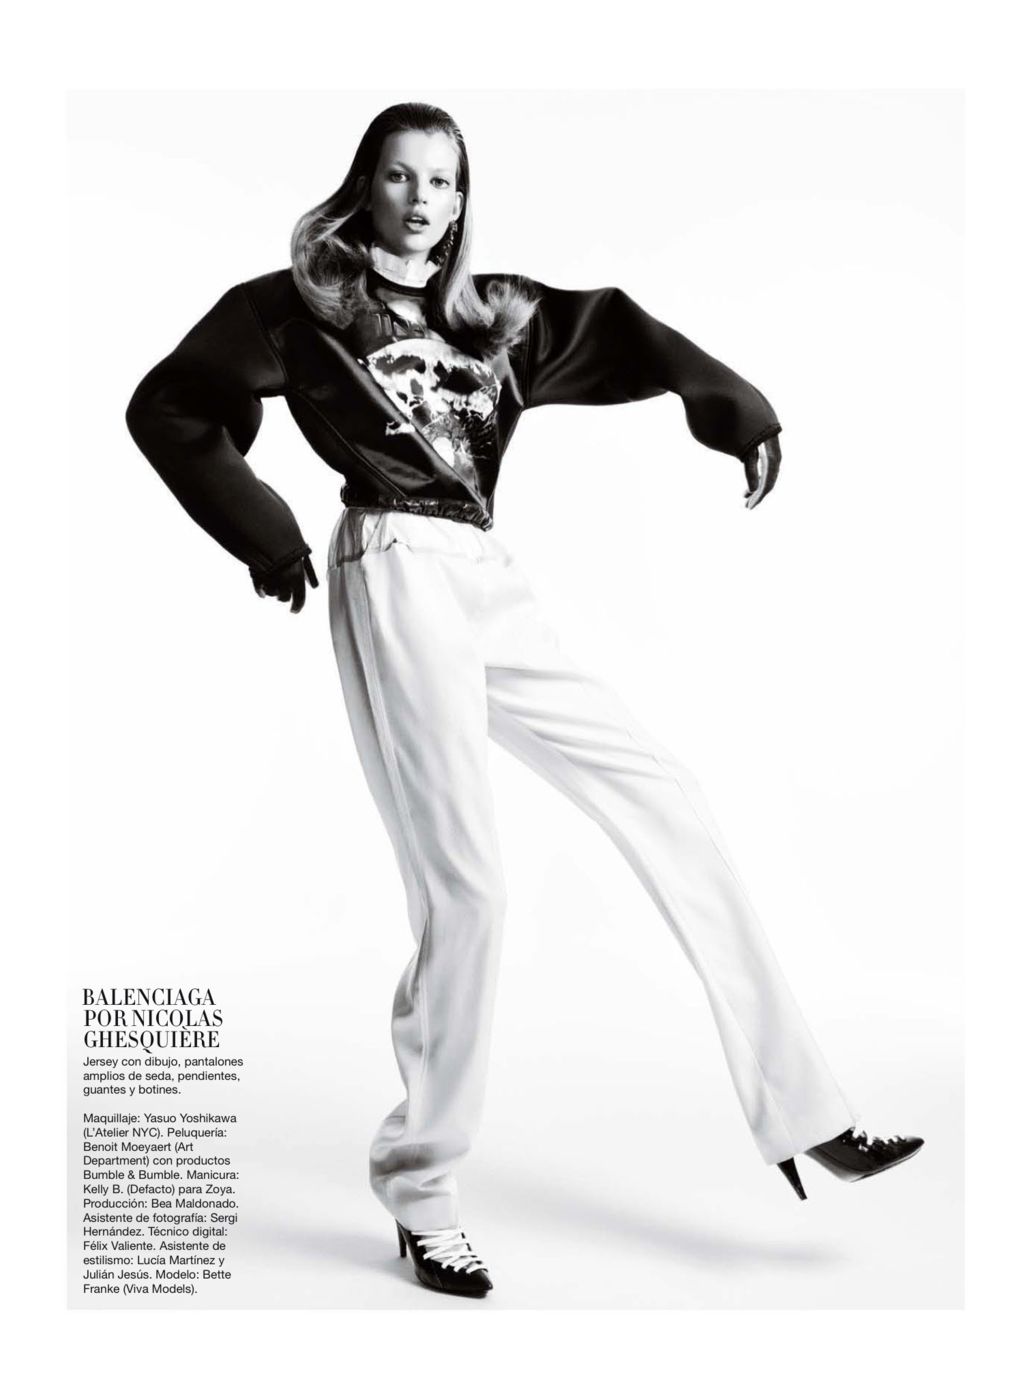 Bette Franke Goes to the Dark Side for Harper's Bazaar Spain October 2012